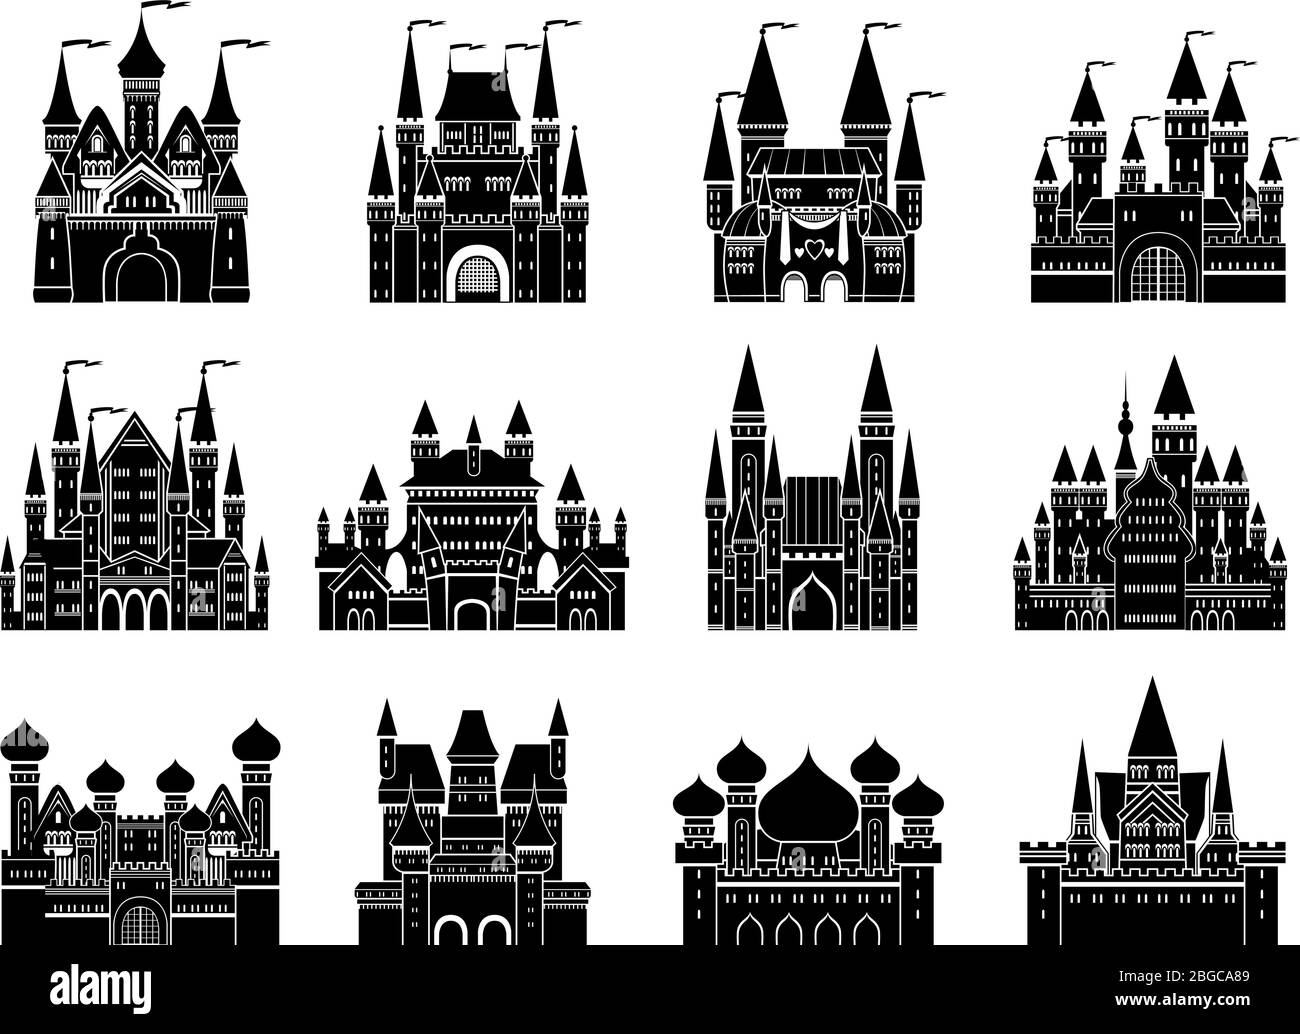 Illustrazioni vettoriali monocromatiche con diversi castelli e torri medievali Illustrazione Vettoriale